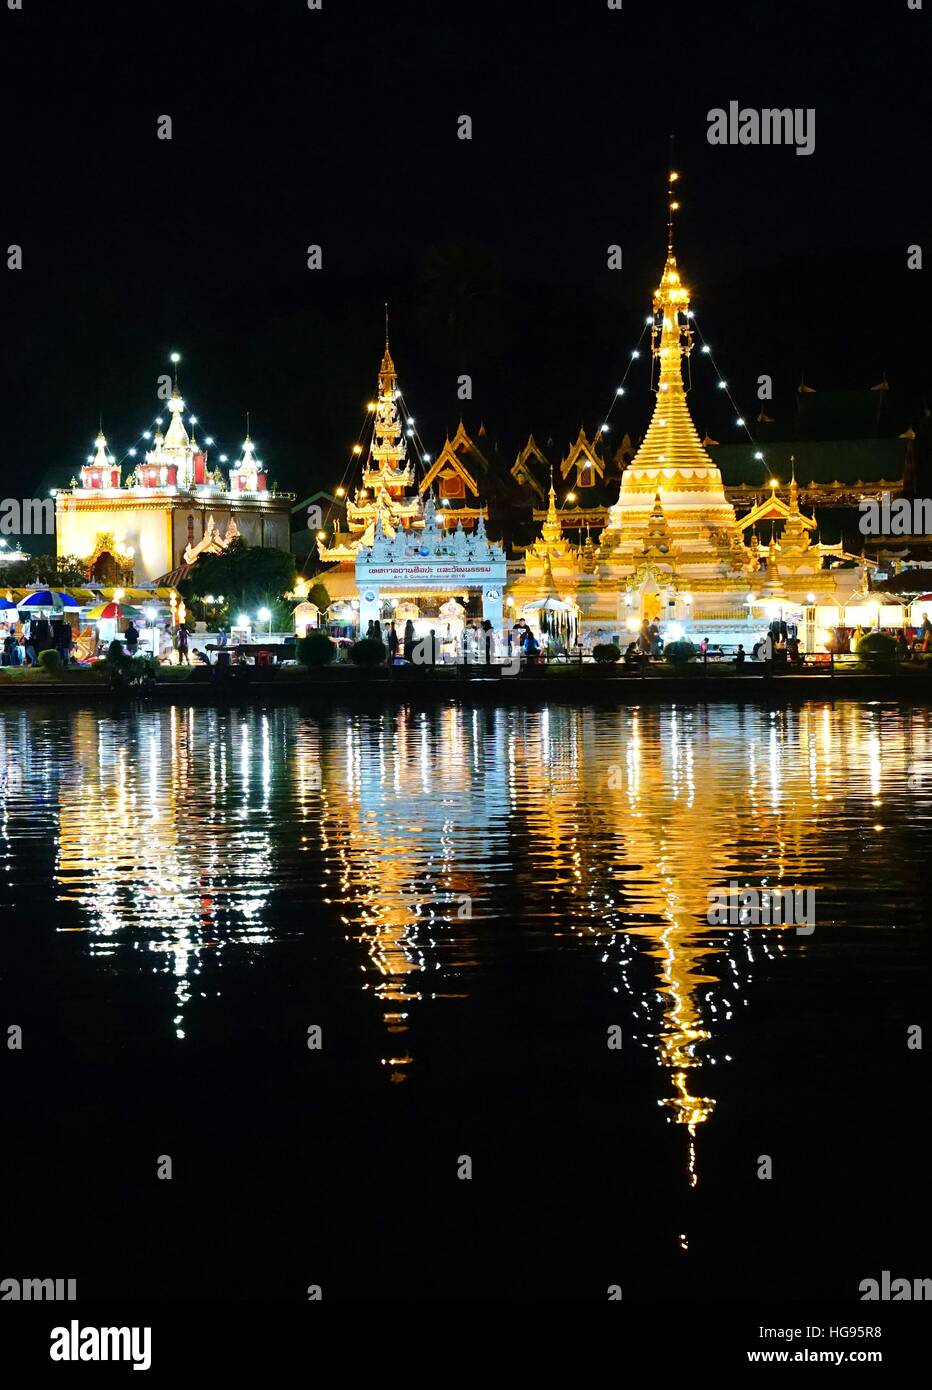 Burmese Architectural Style of Wat Chong Klang and Wat Chong Kham at night. Mae Hong Son, Northern Thailand Stock Photo